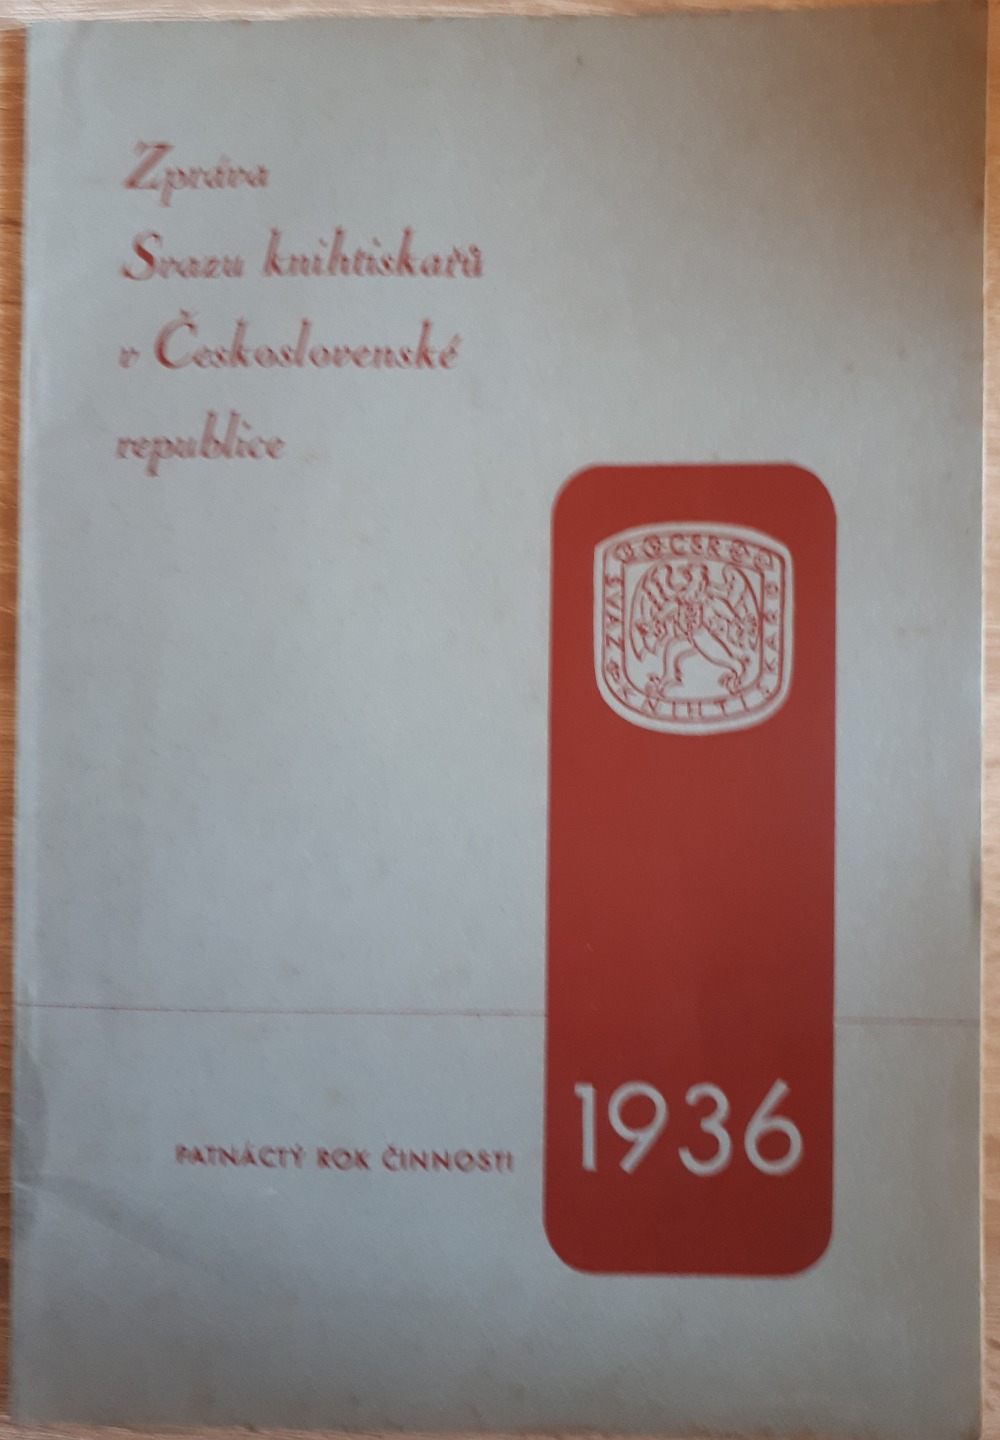 Zpráva Svazu knihtiskařů v Československé republice za rok 1936